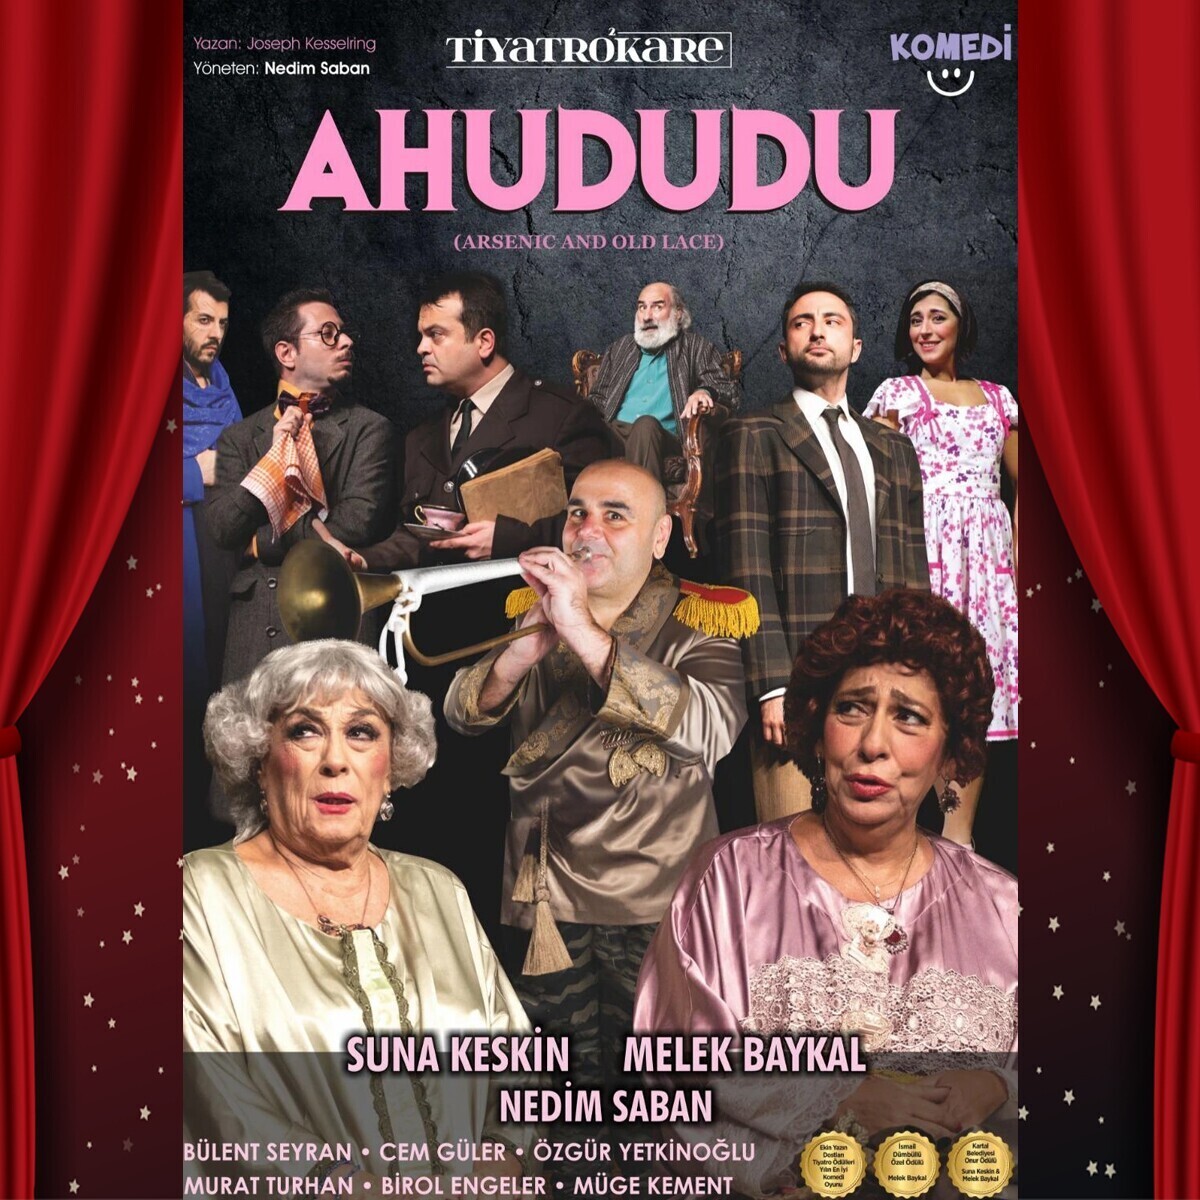 Suna Keskin, Melek Baykal ve Nedim Saban'ın Başrollerini Paylaştığı Efsane Bir Kadronun Sahnelediği 'Ahududu' Adlı Tiyatro Oyununa Bilet